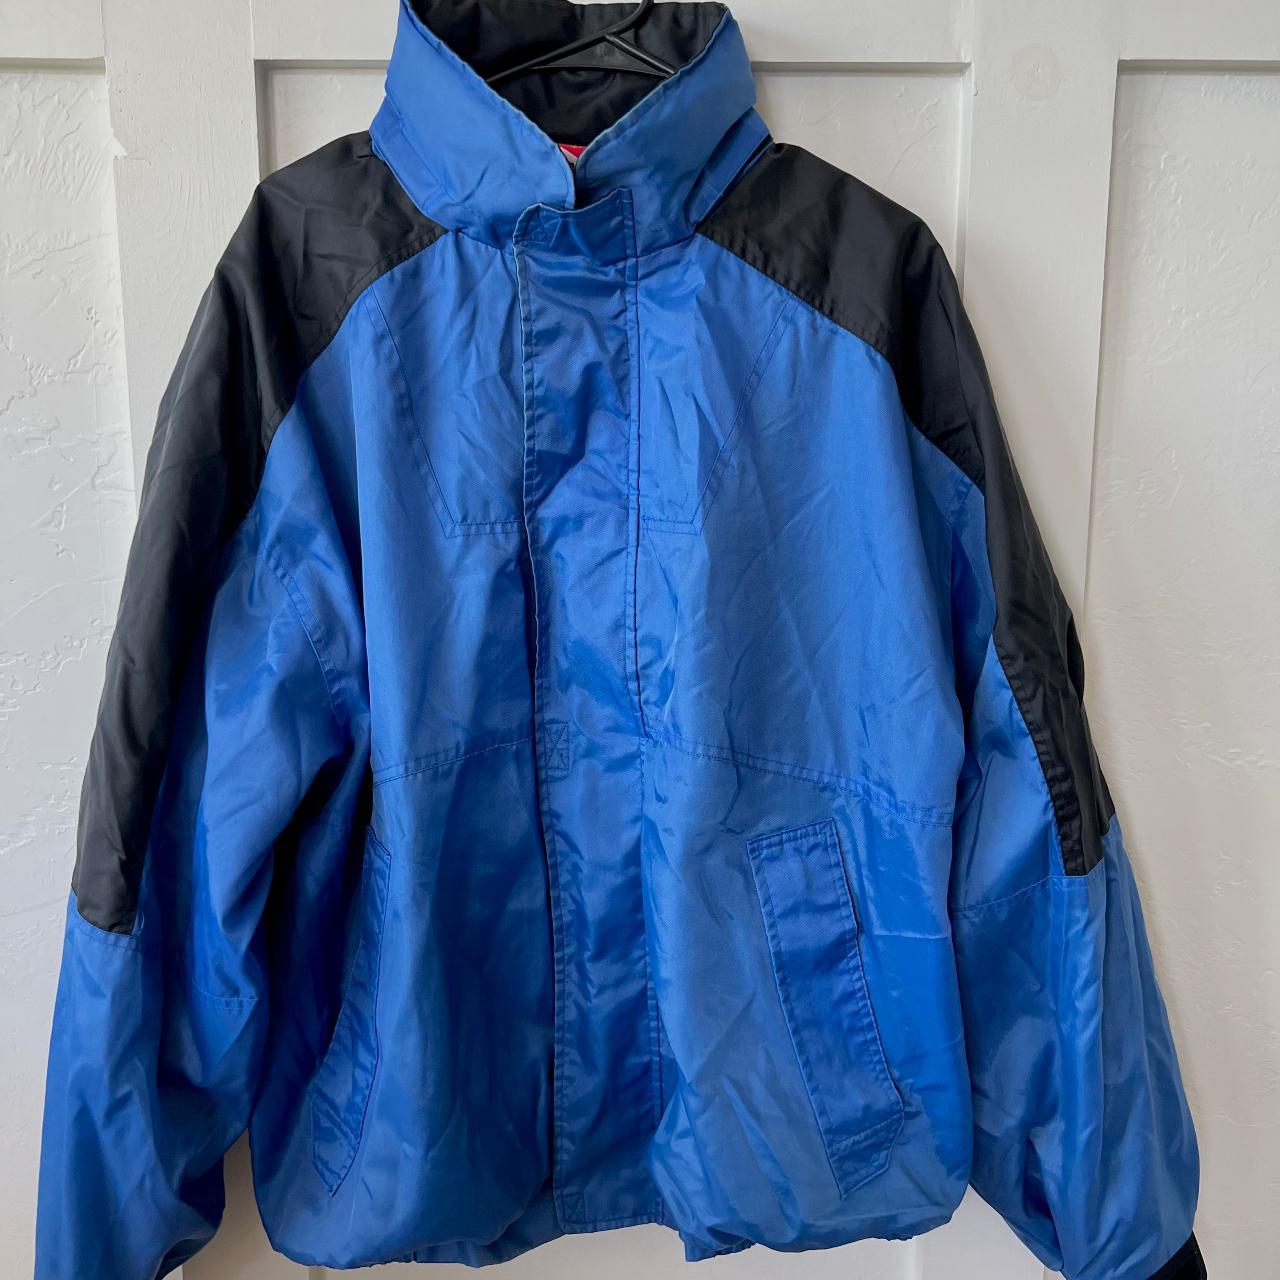 blue, xl, full zip/velcro marlboro jacket - Depop